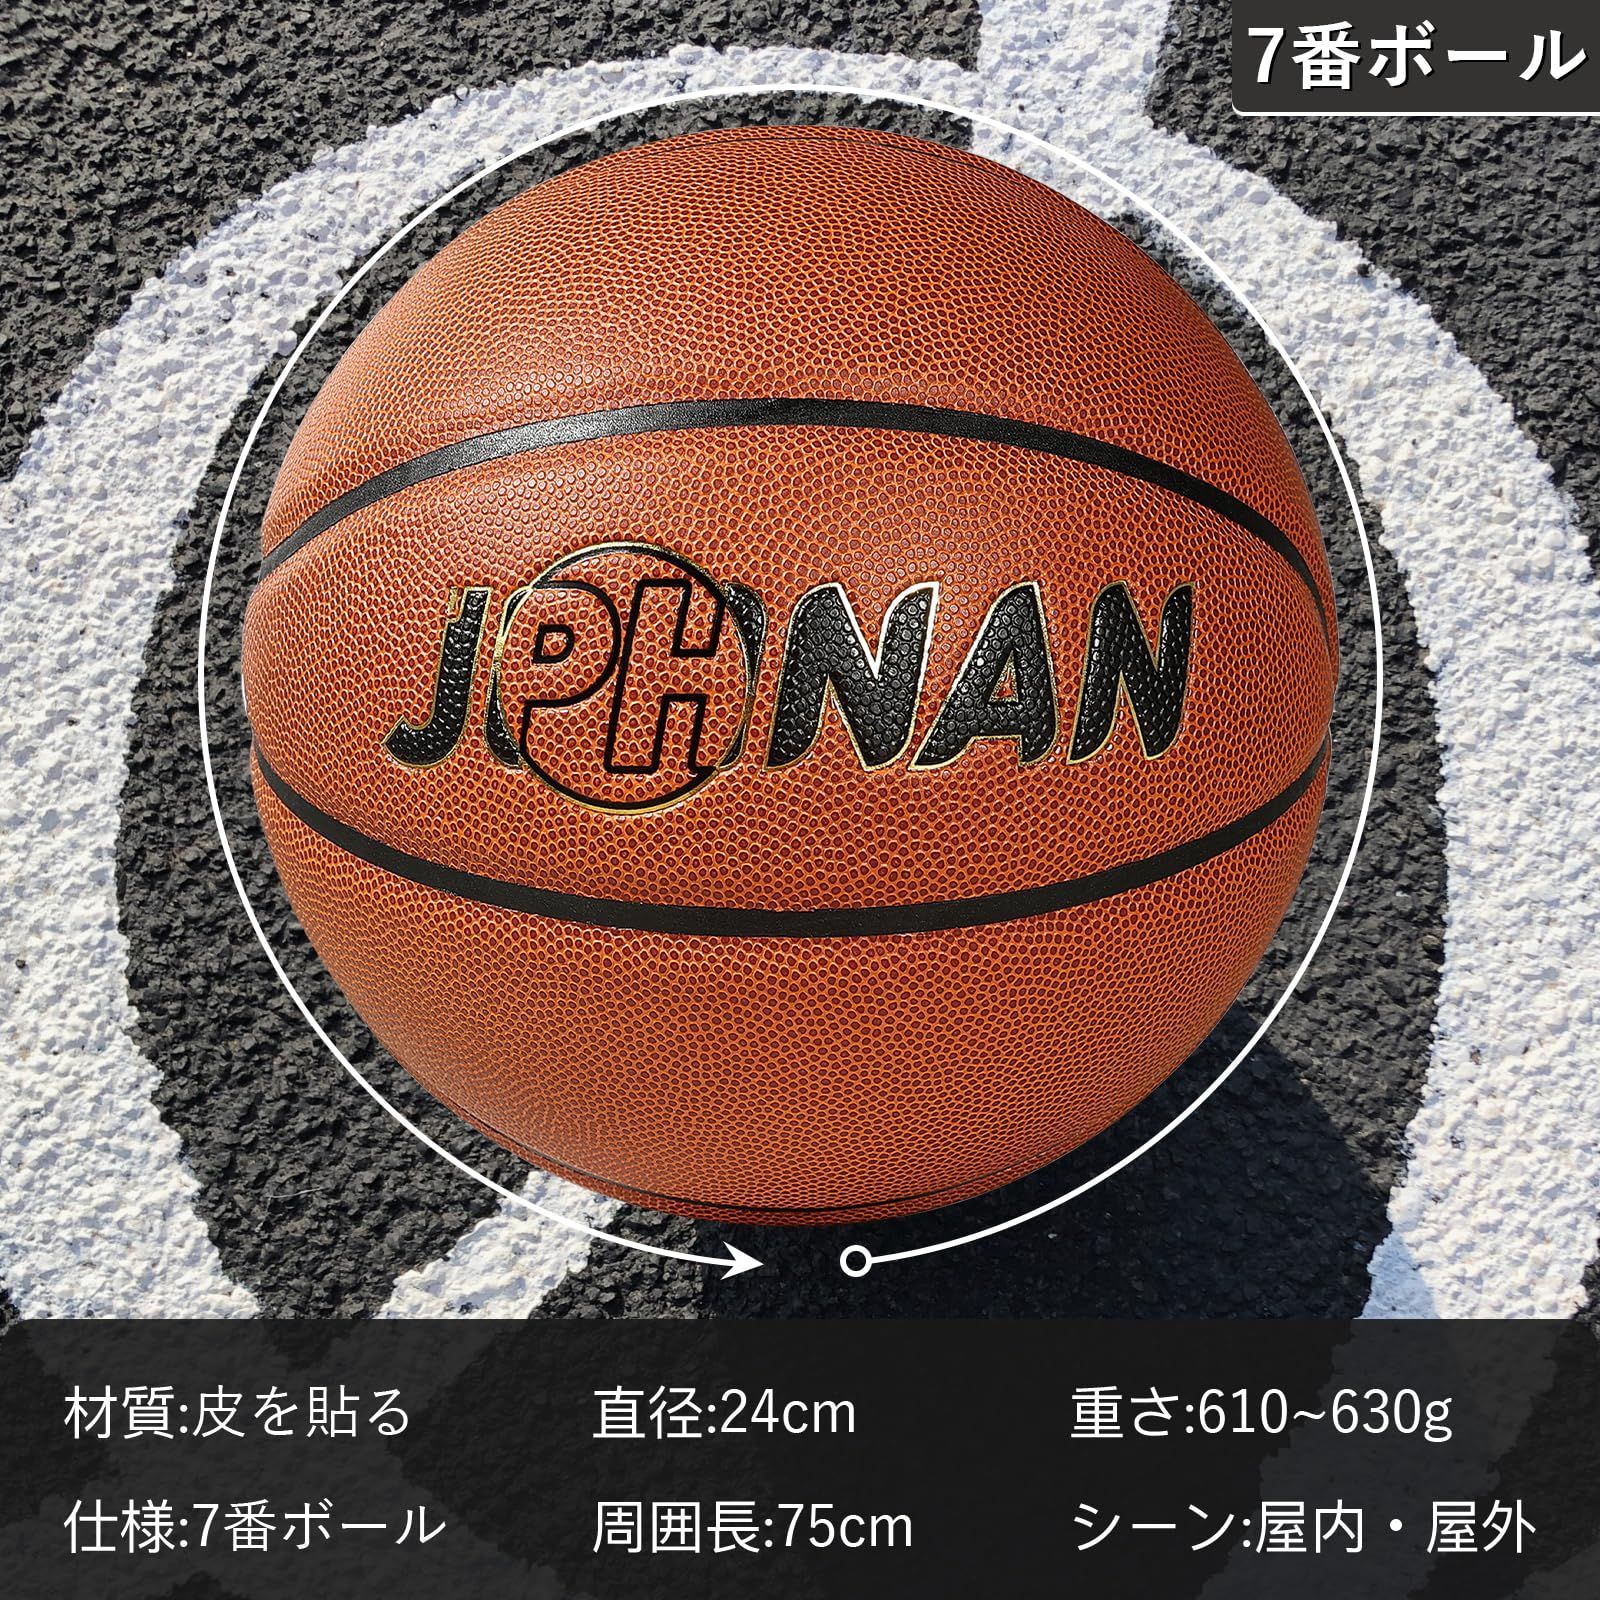 【スタイル:片面メインロゴ(且つサブラベル)】JPHNAN バスケットボール 7